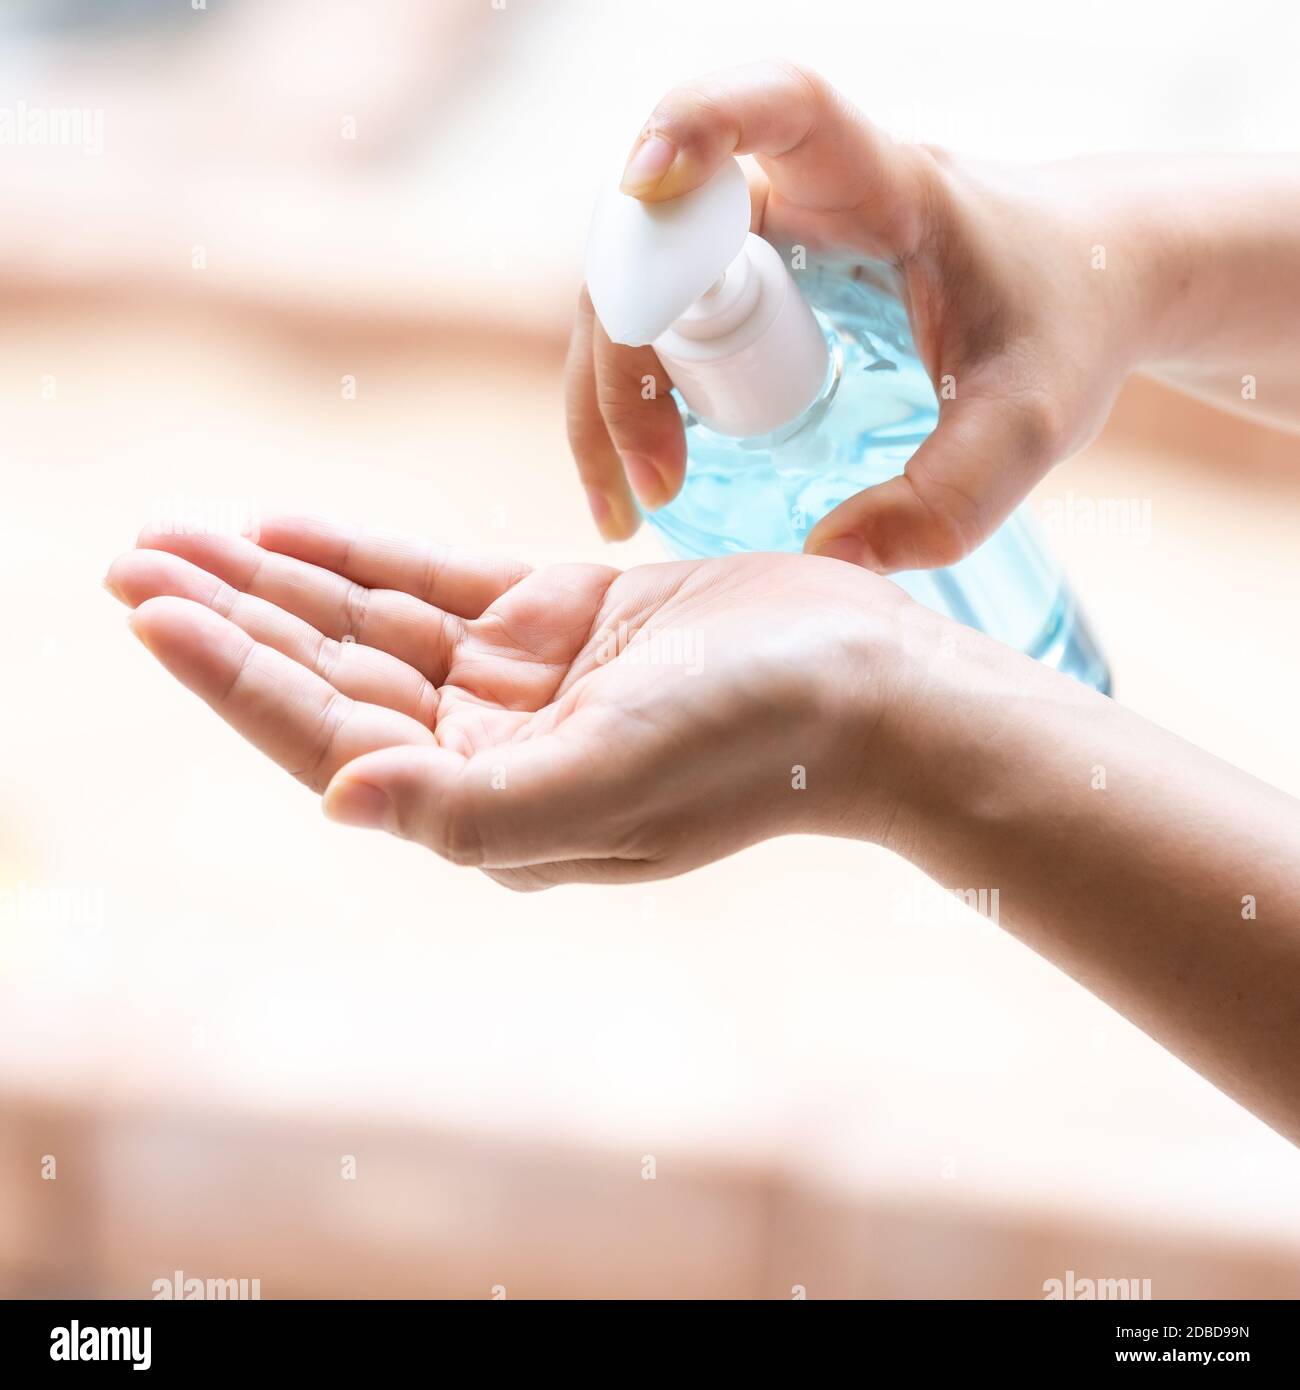 Nahreinigung Hand mit Alocohol Gel Hand Desinfektionsmittel wasserlos in der Pumpe Flasche, Desinfektion für die Sicherheit zu verhindern und vor Infektionen des Virus zu schützen Stockfoto